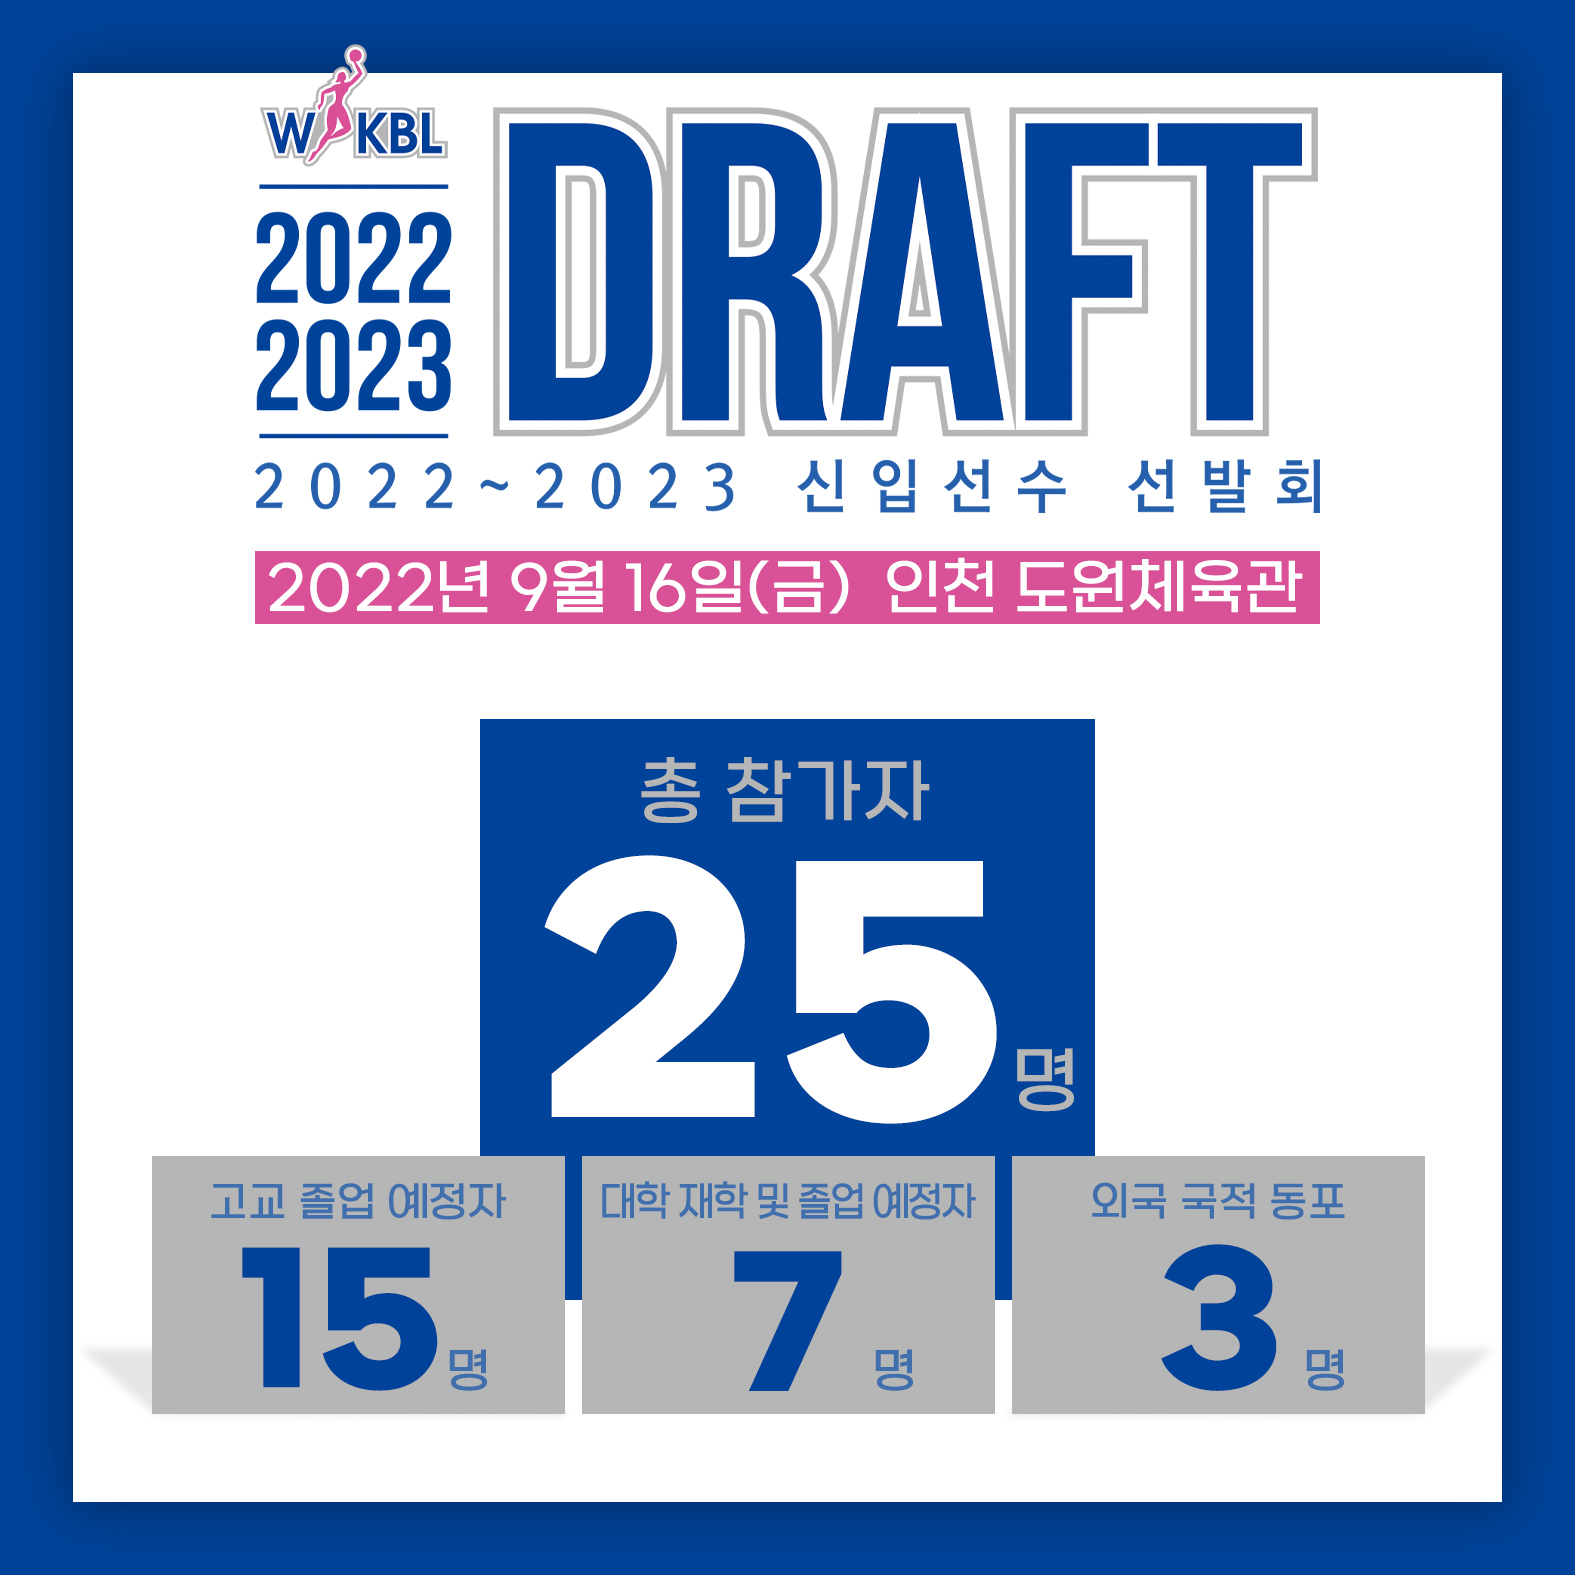 2022~2023 WKBL 신입선수선발회 참가 선수 명단 확정 관련 이미지_220908.jpg